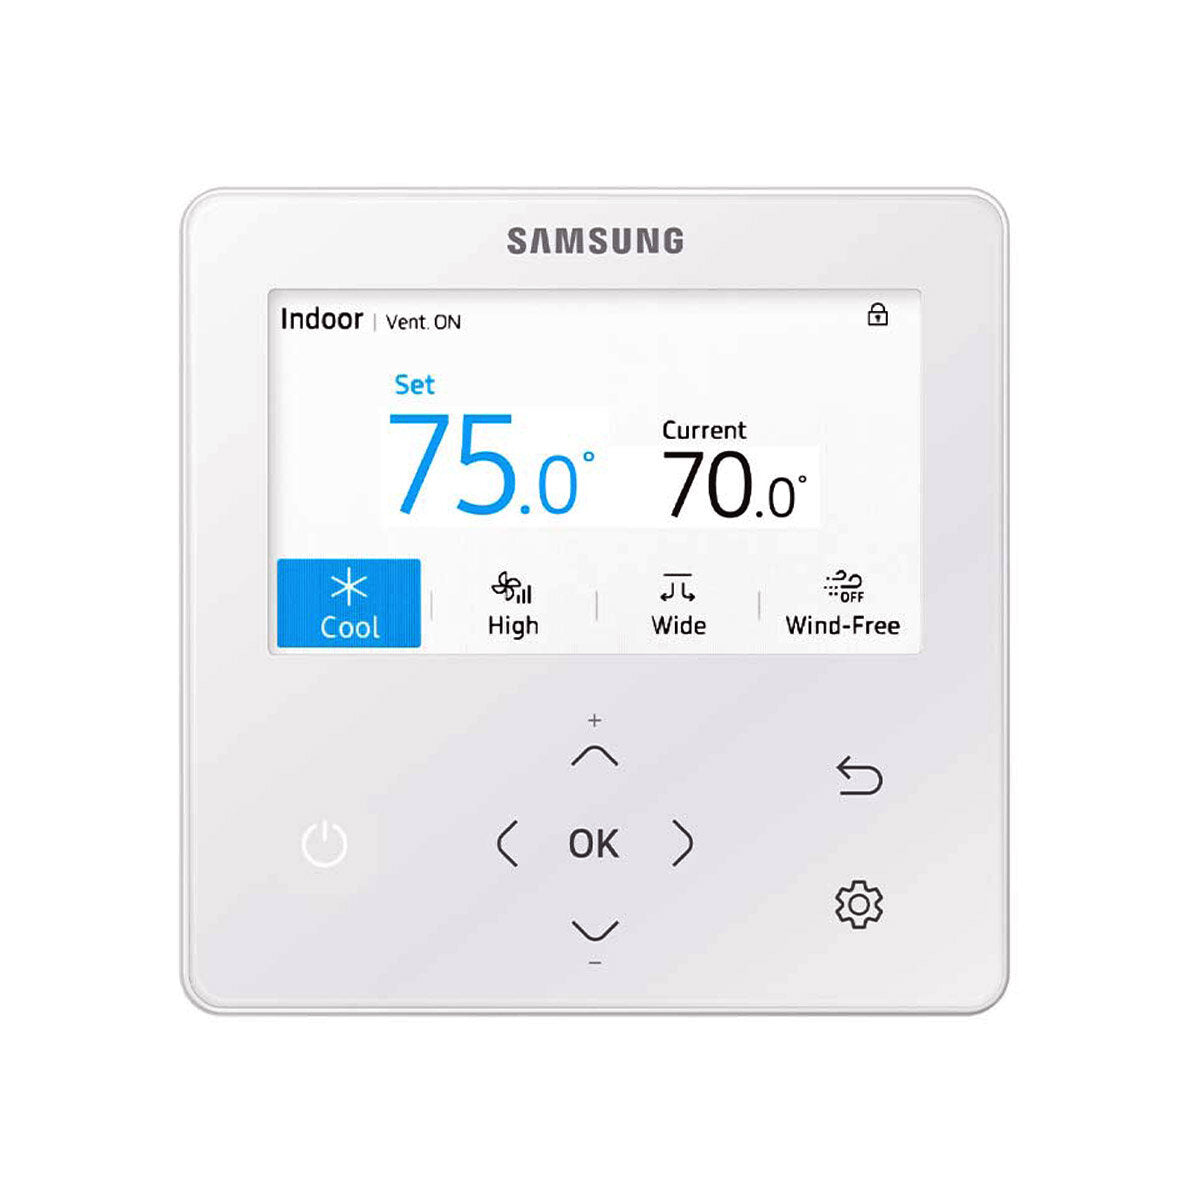 Samsung Klimaanlage Windfree 4-wege Pentasplit 9000 + 9000 + 9000 + 9000 + 18000 BTU Inverter A++ Außengerät 10,0 kW